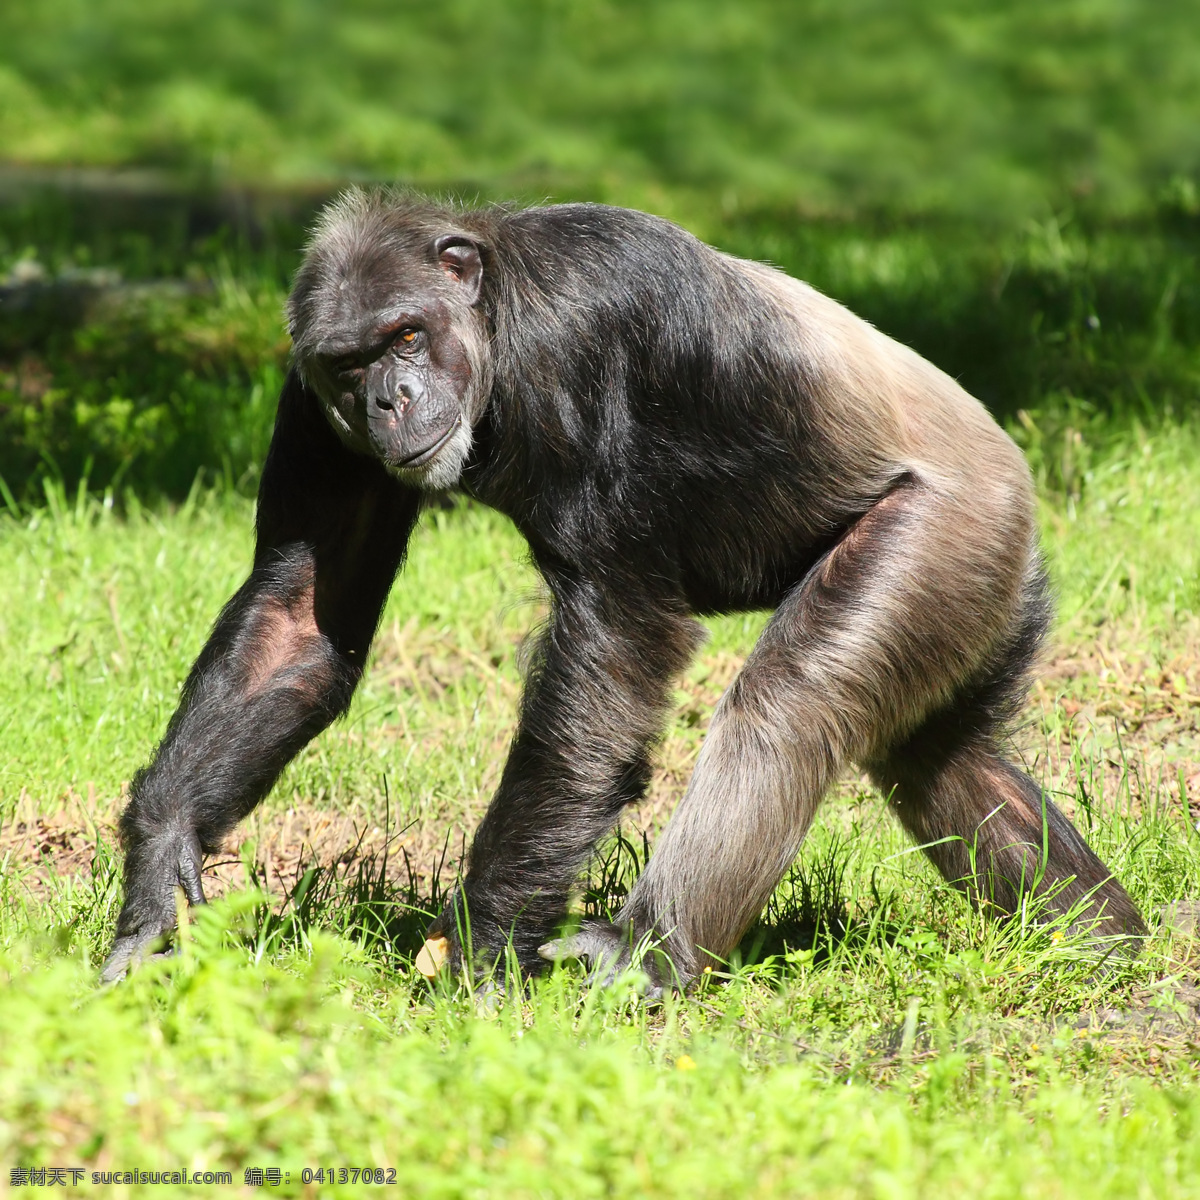 草地 上 猩猩 类人猿 动物 野生动物 动物世界 陆地动物 动物摄影 生物世界